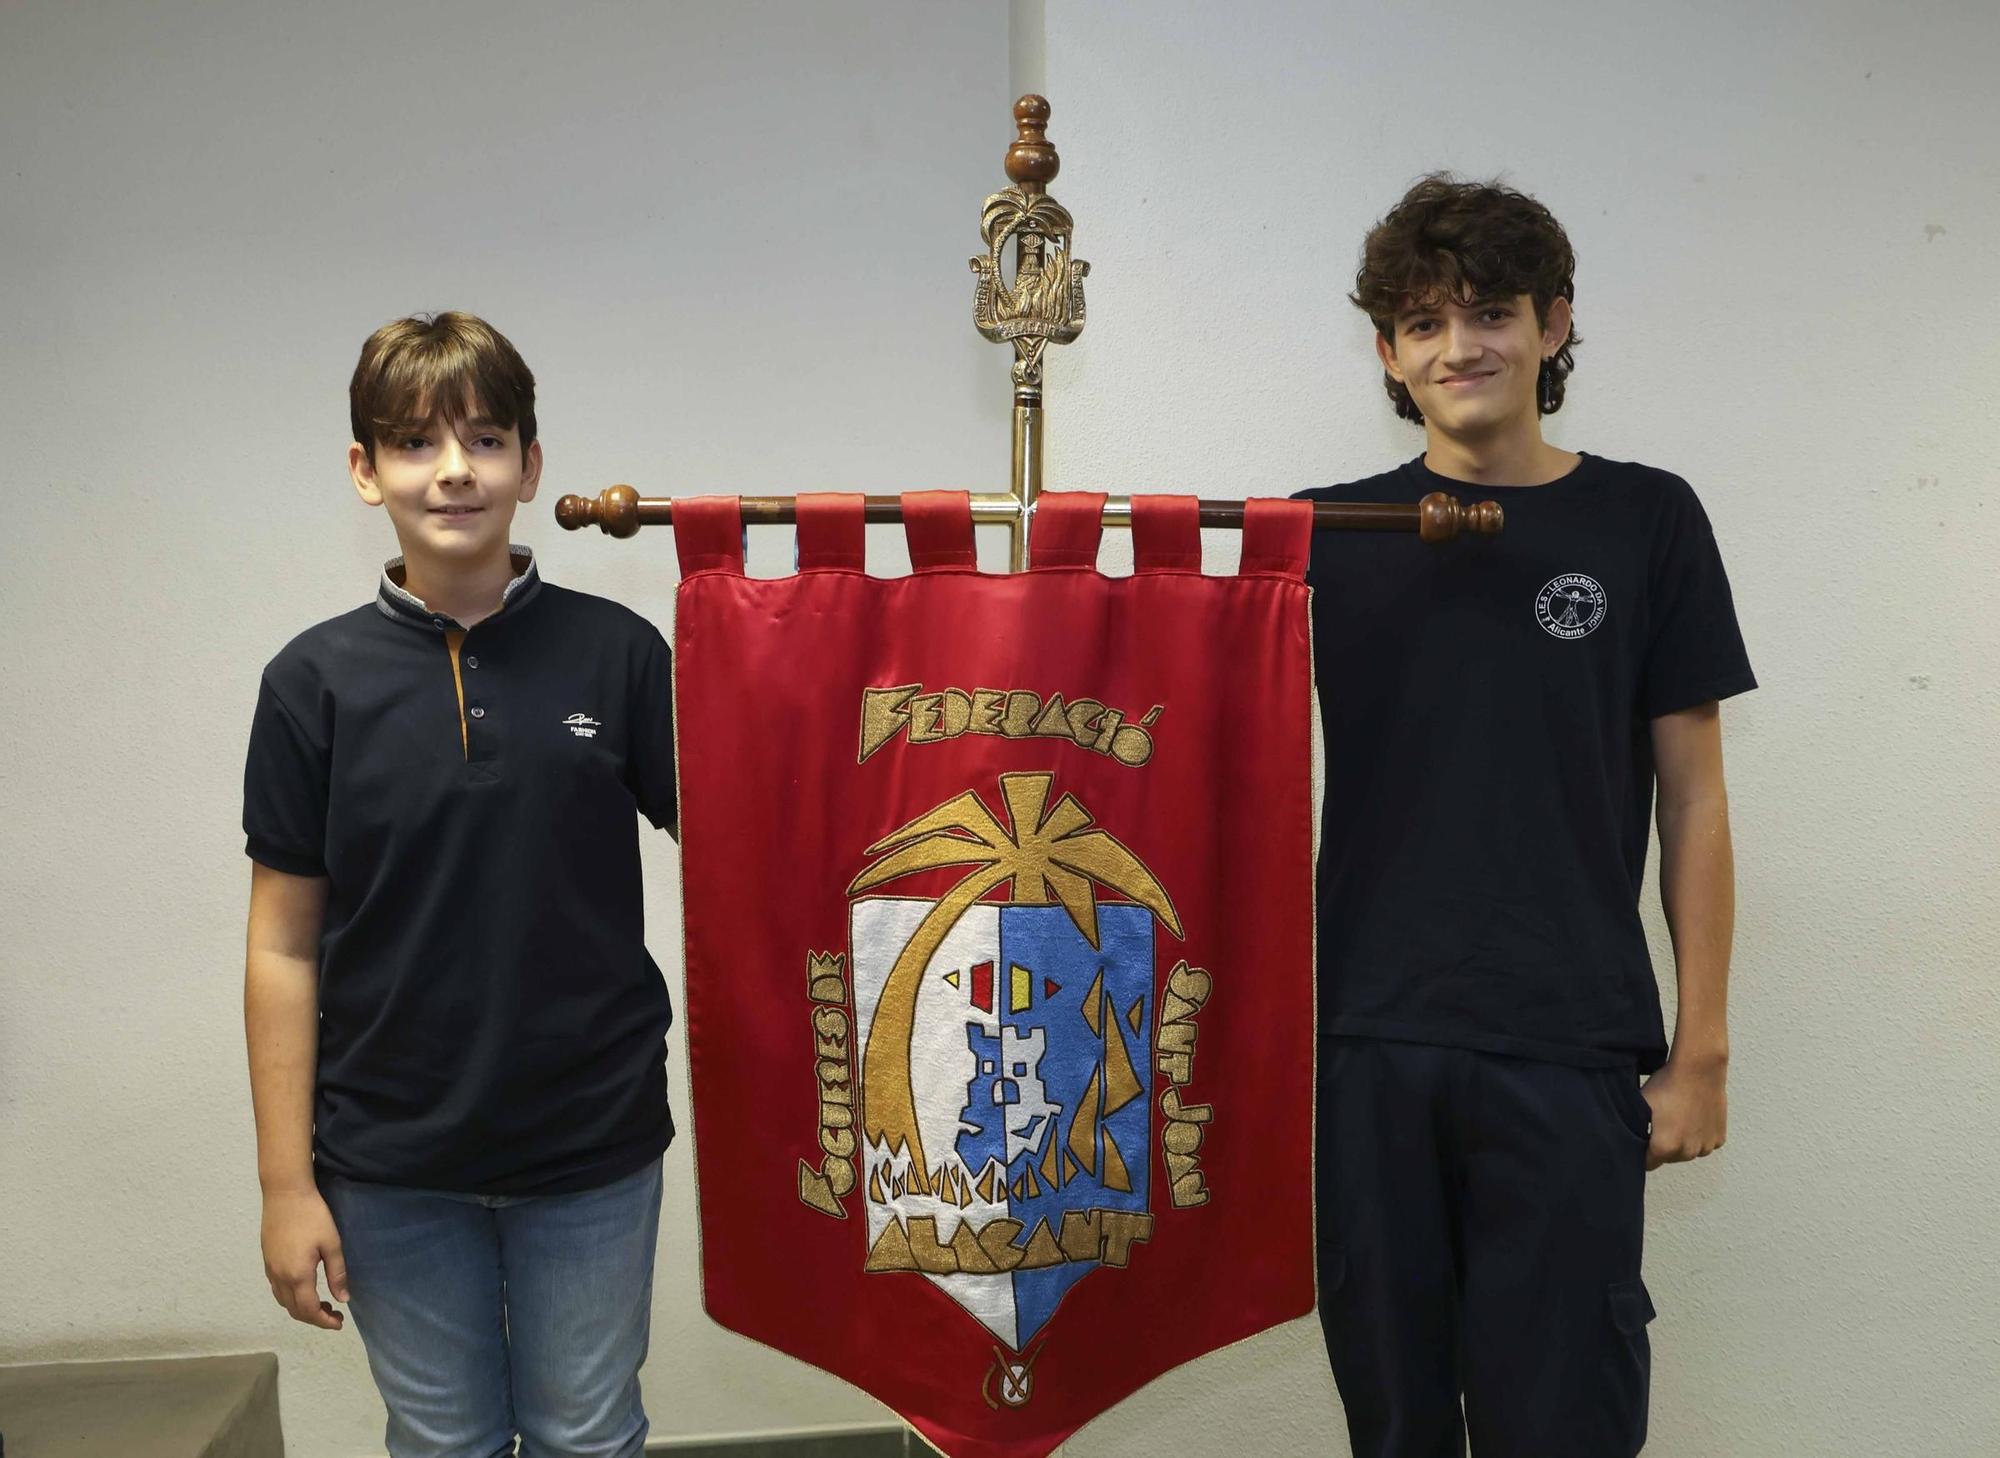 Así fue la elección del nuevo banderín oficial de las Hogueras de Alicante